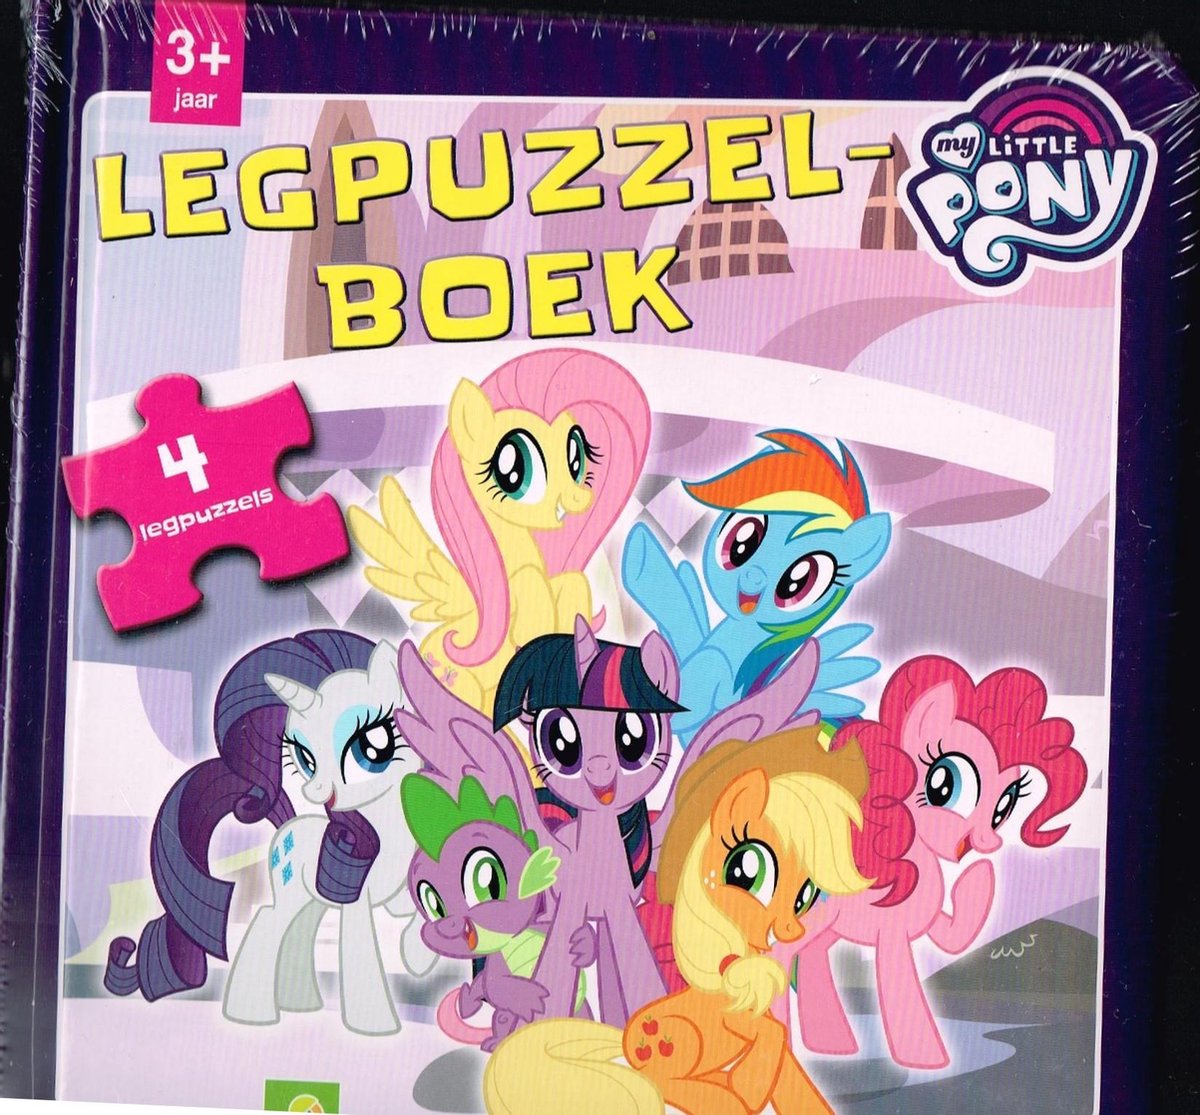 Legpuzzelboek My Little Pony 3 puzzels | Tweedehands | Boekenbalie